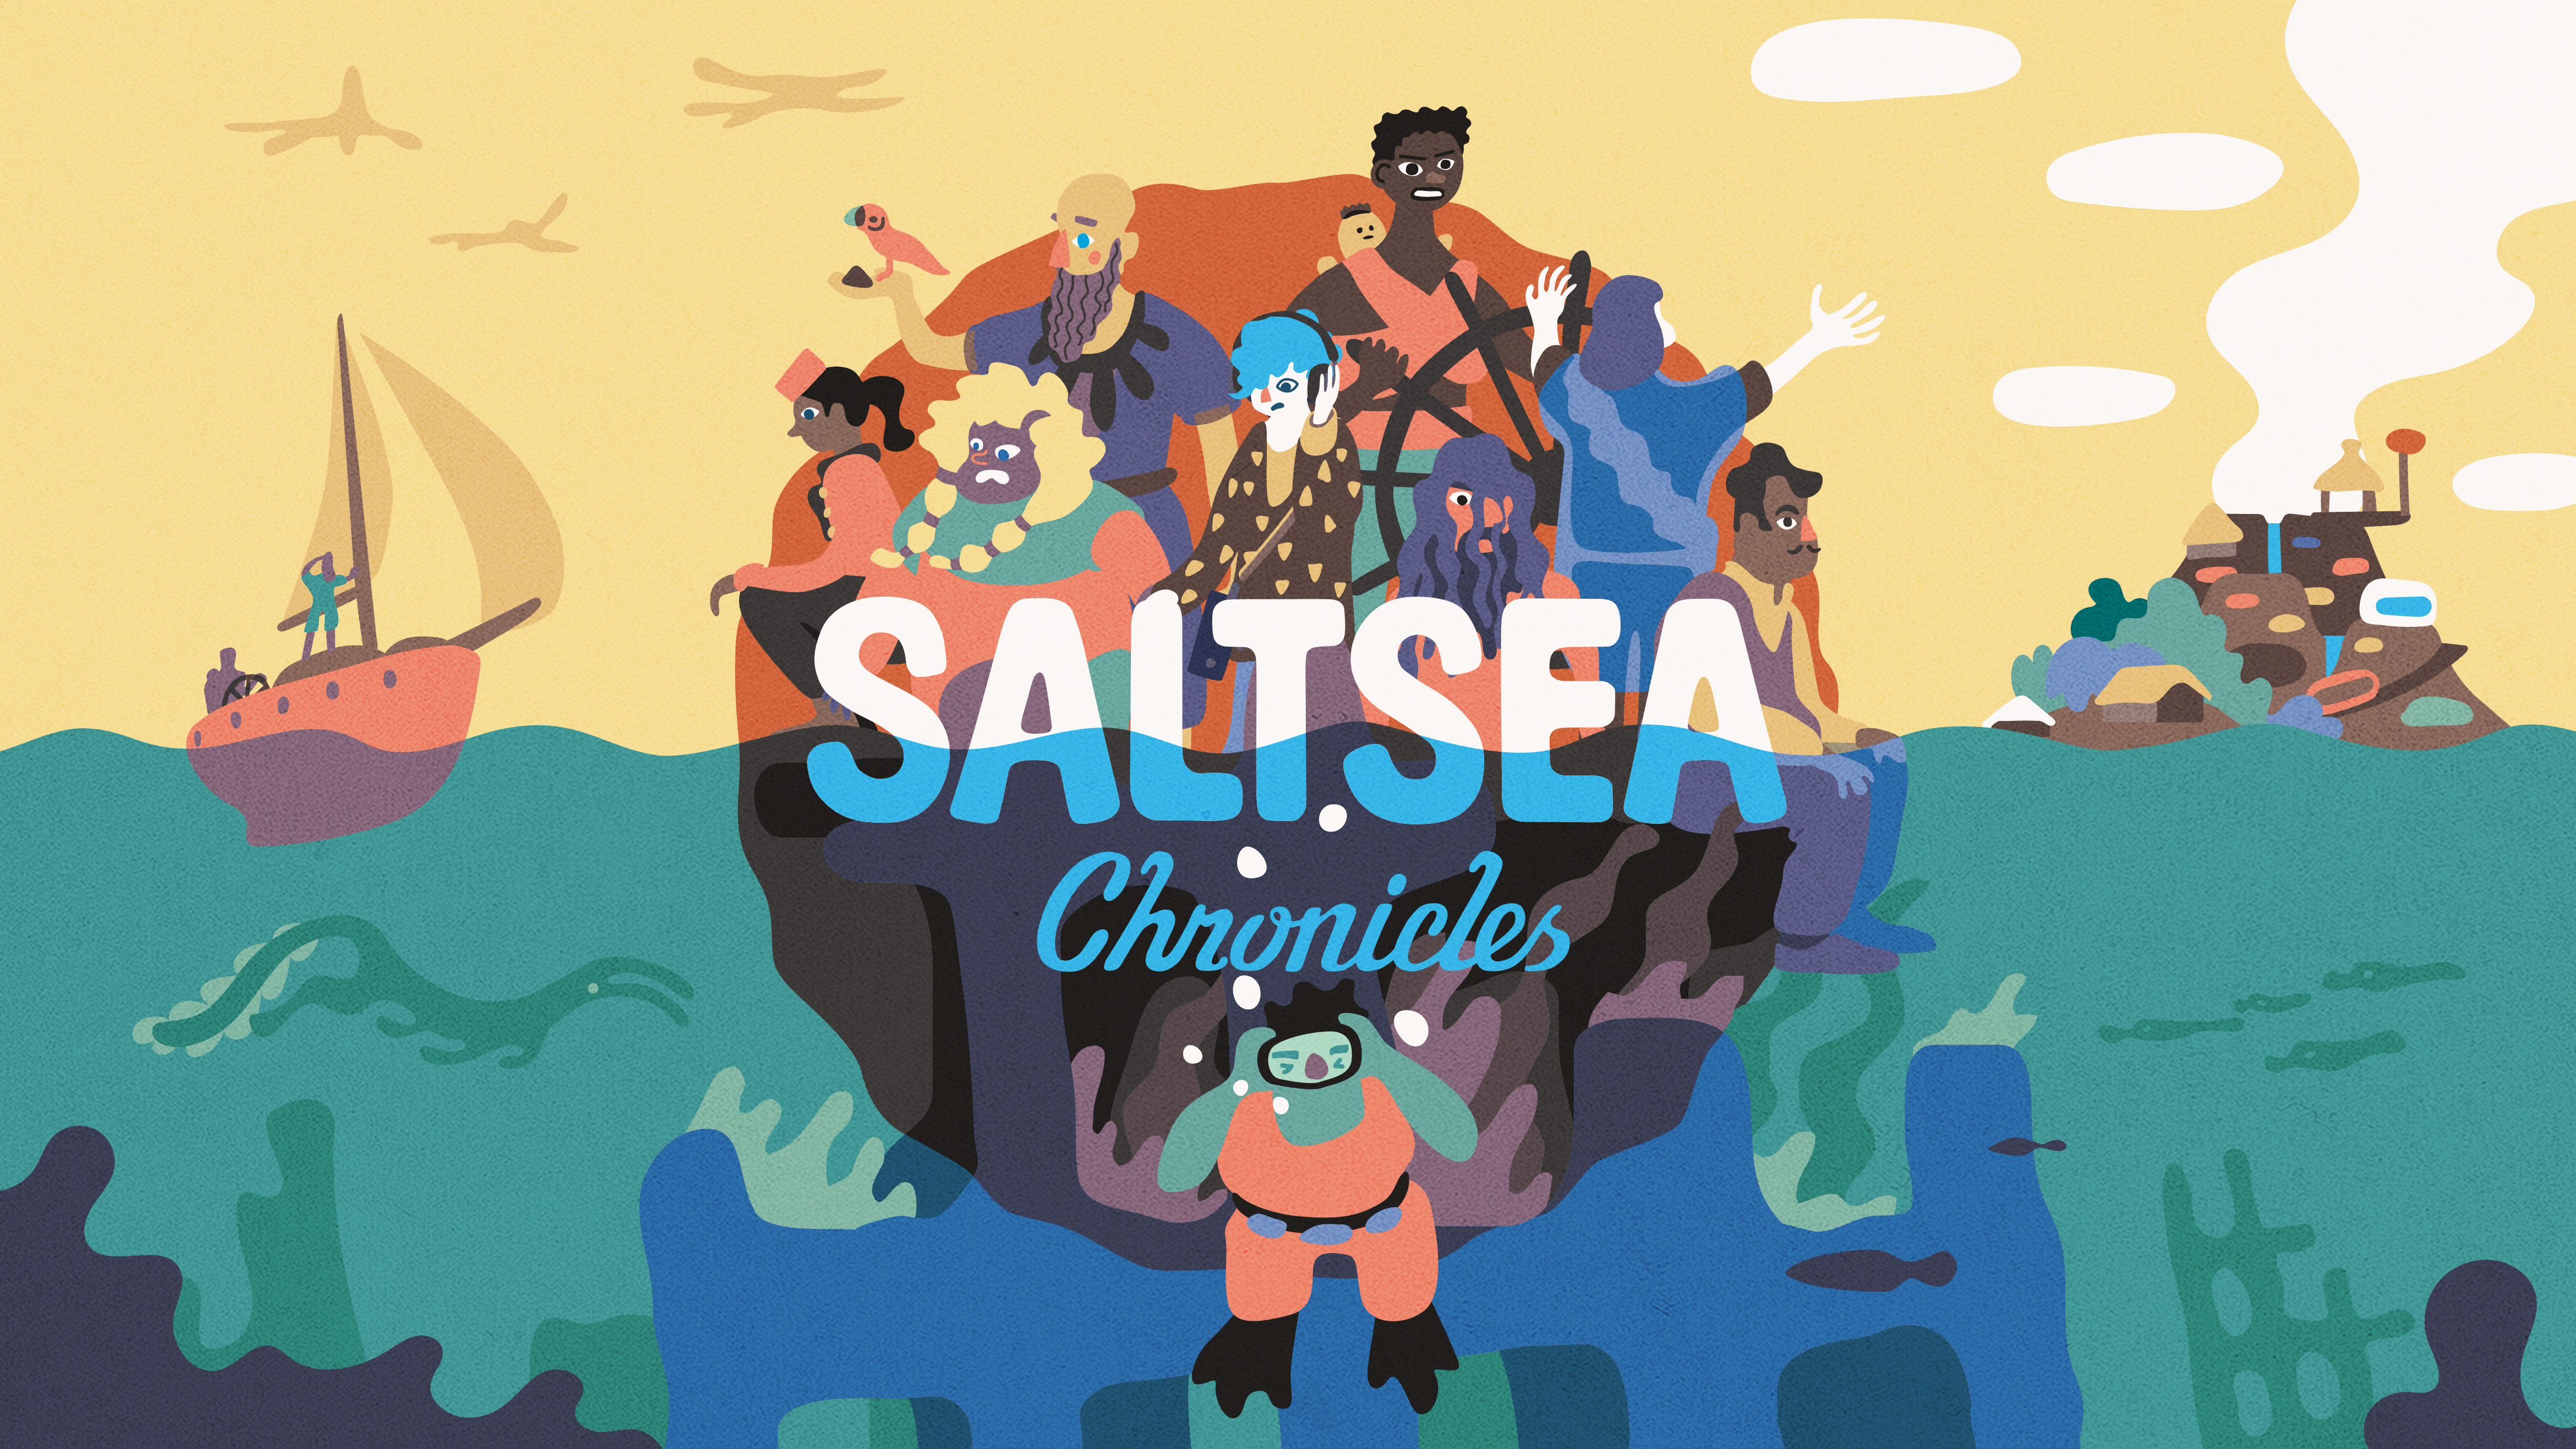 Salt Sea Chronicles